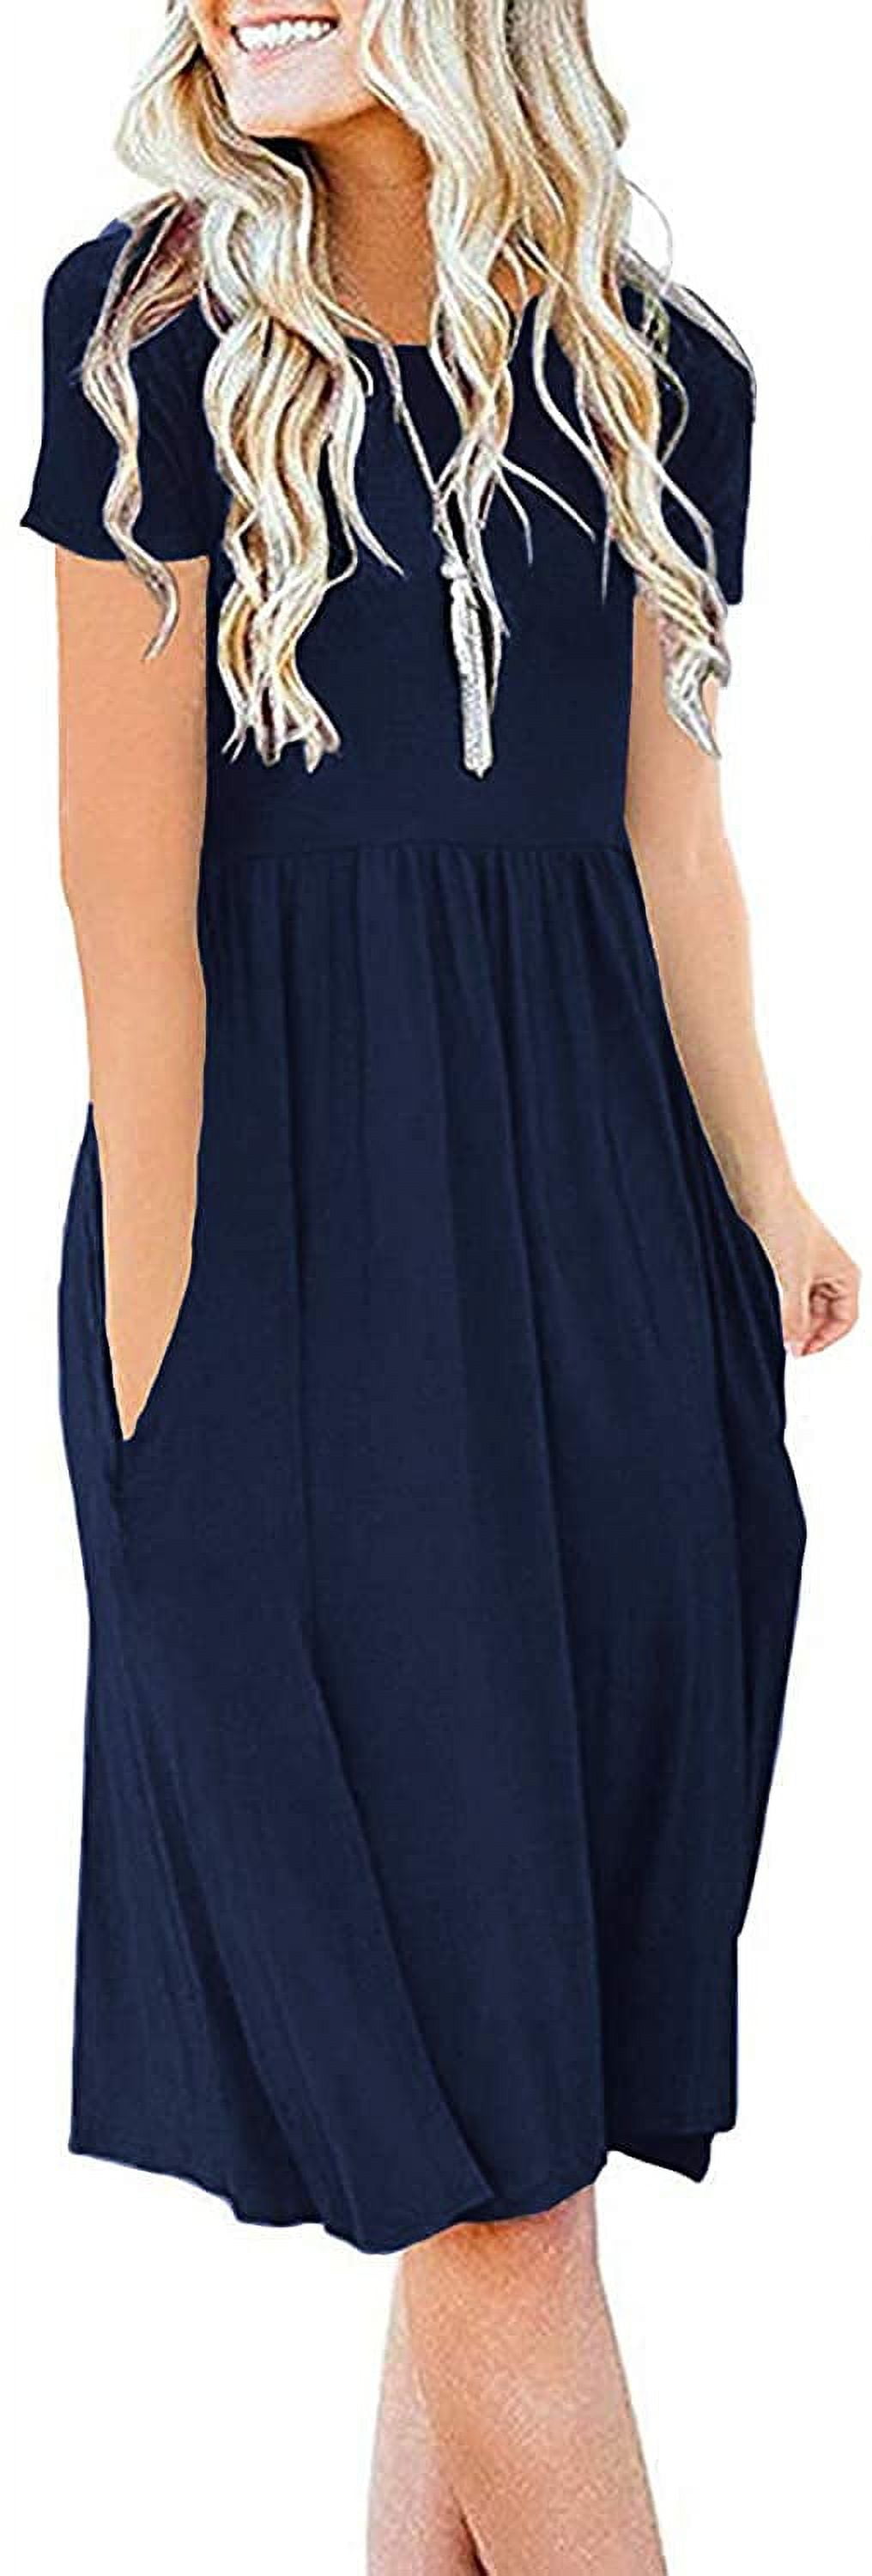 JuneFish Women's Summer Casual Short Sleeve Dresses Empire Waist Dress ...